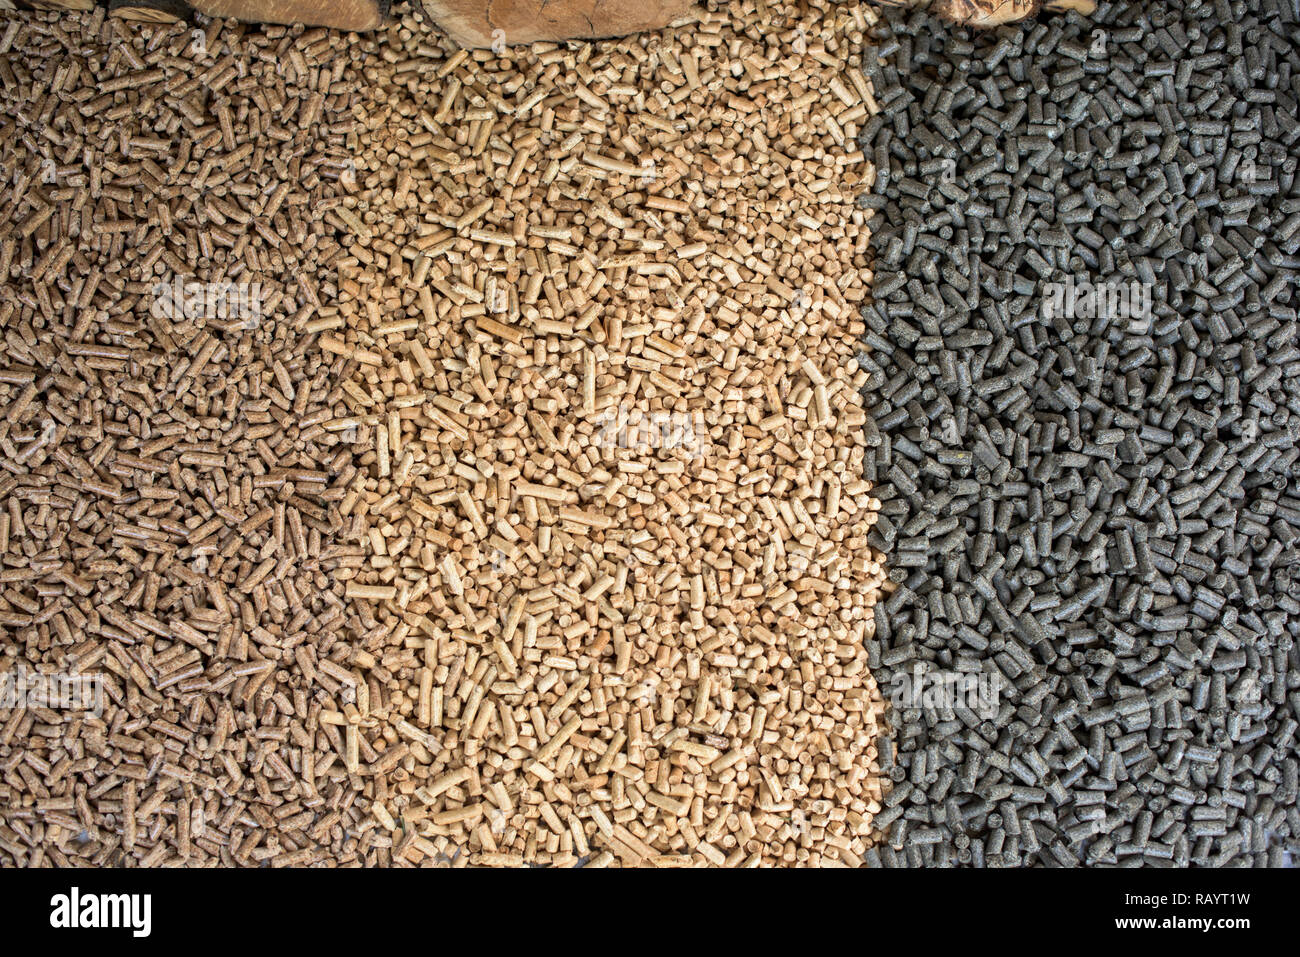 Drei verschiedene Arten von Holz- Pellets - Kiefer, Eiche, Sunflower pellets Stockfoto